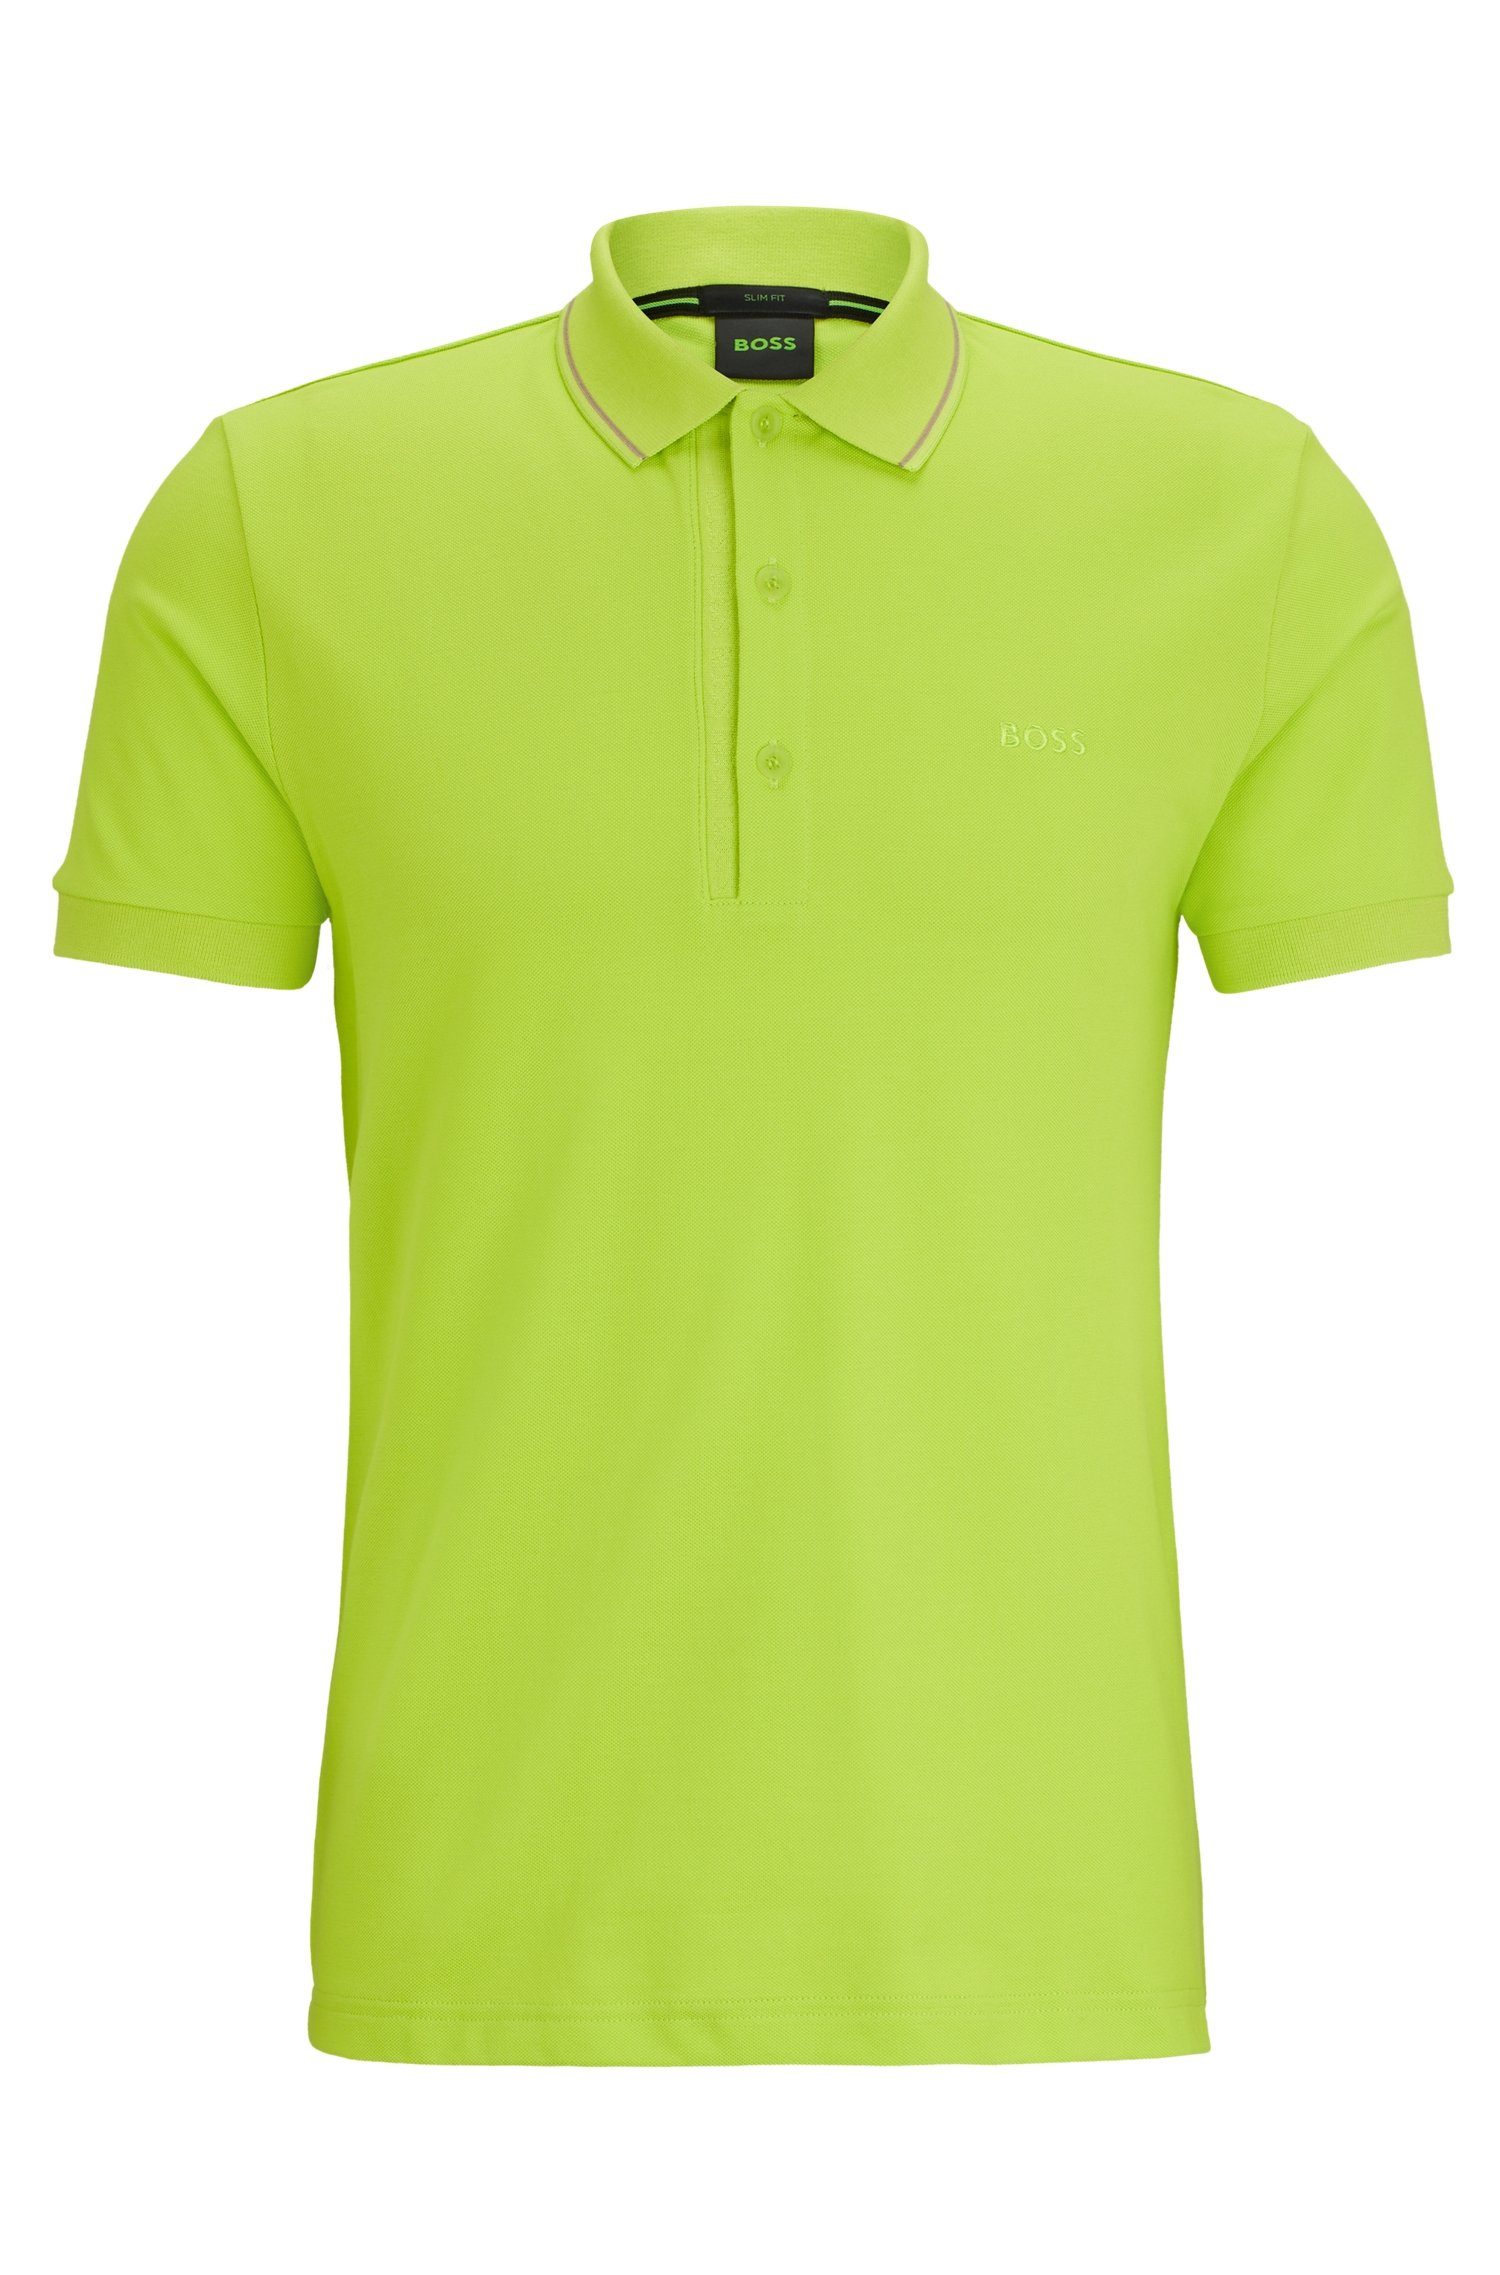 10241781 01 Green Bright BOSS Poloshirt Paule 4